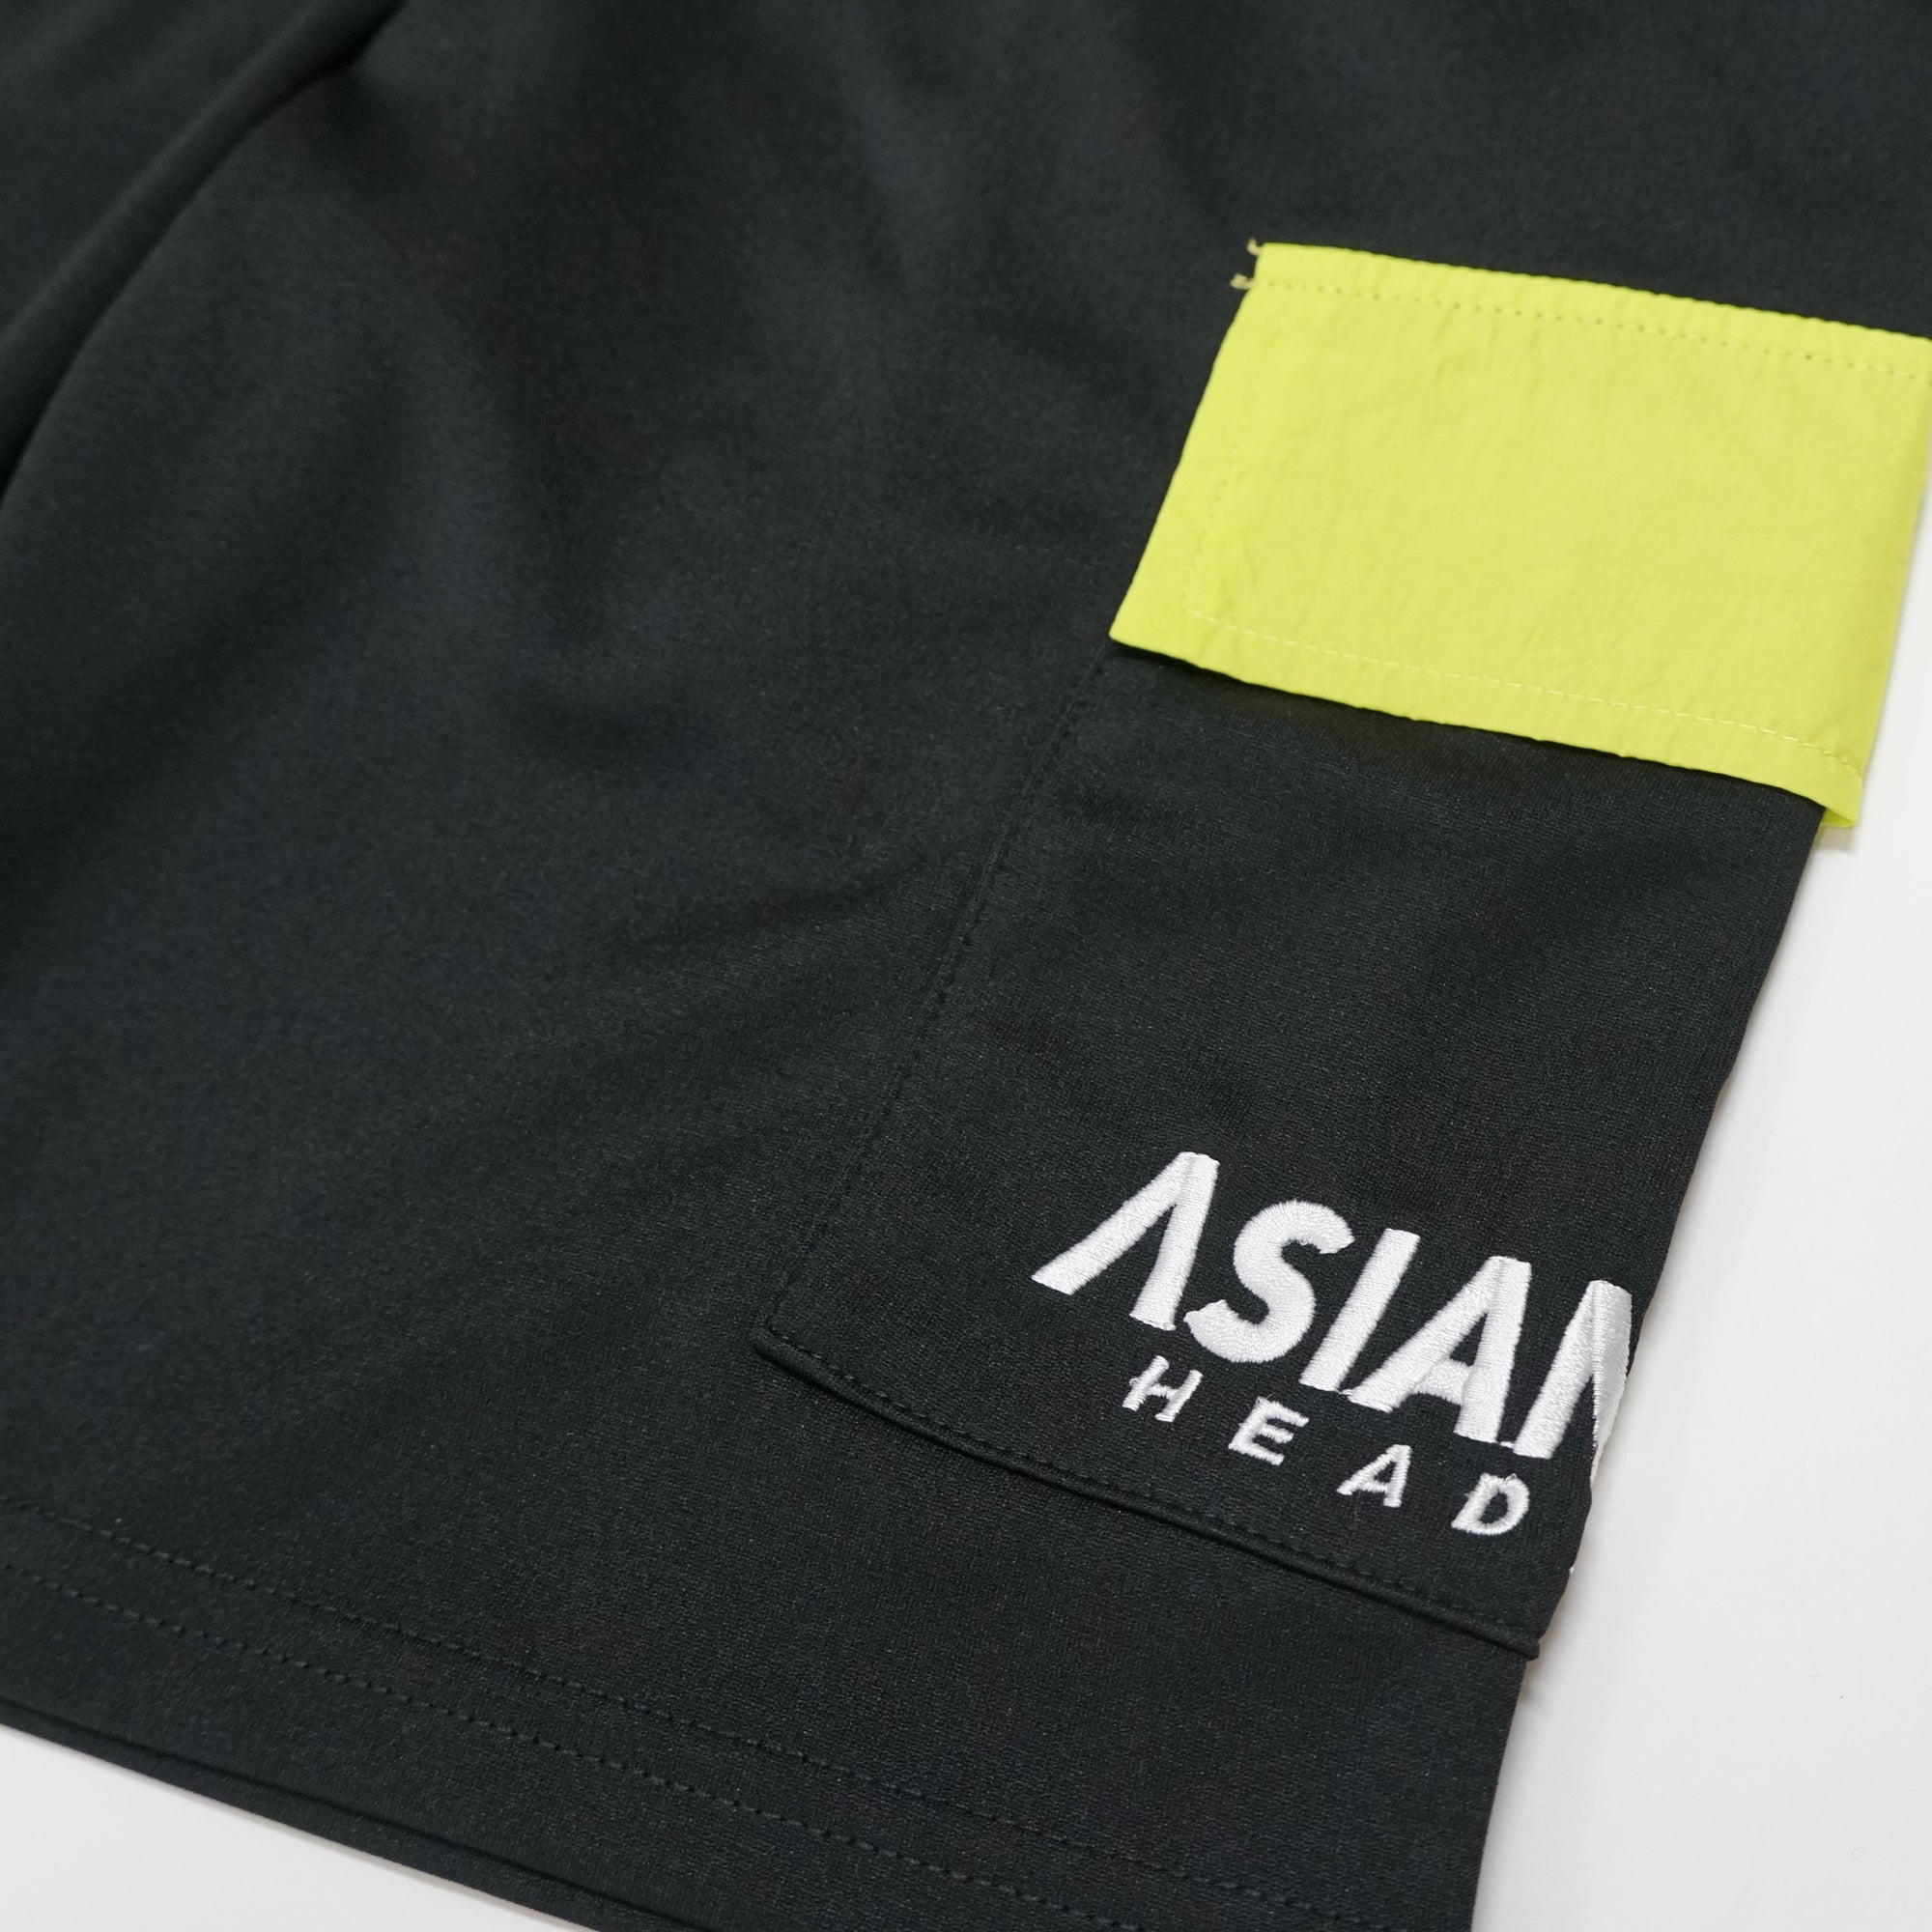 (40%オフ! セール商品)  ASIANZ HEAD2 サイドポケットハーフパンツ